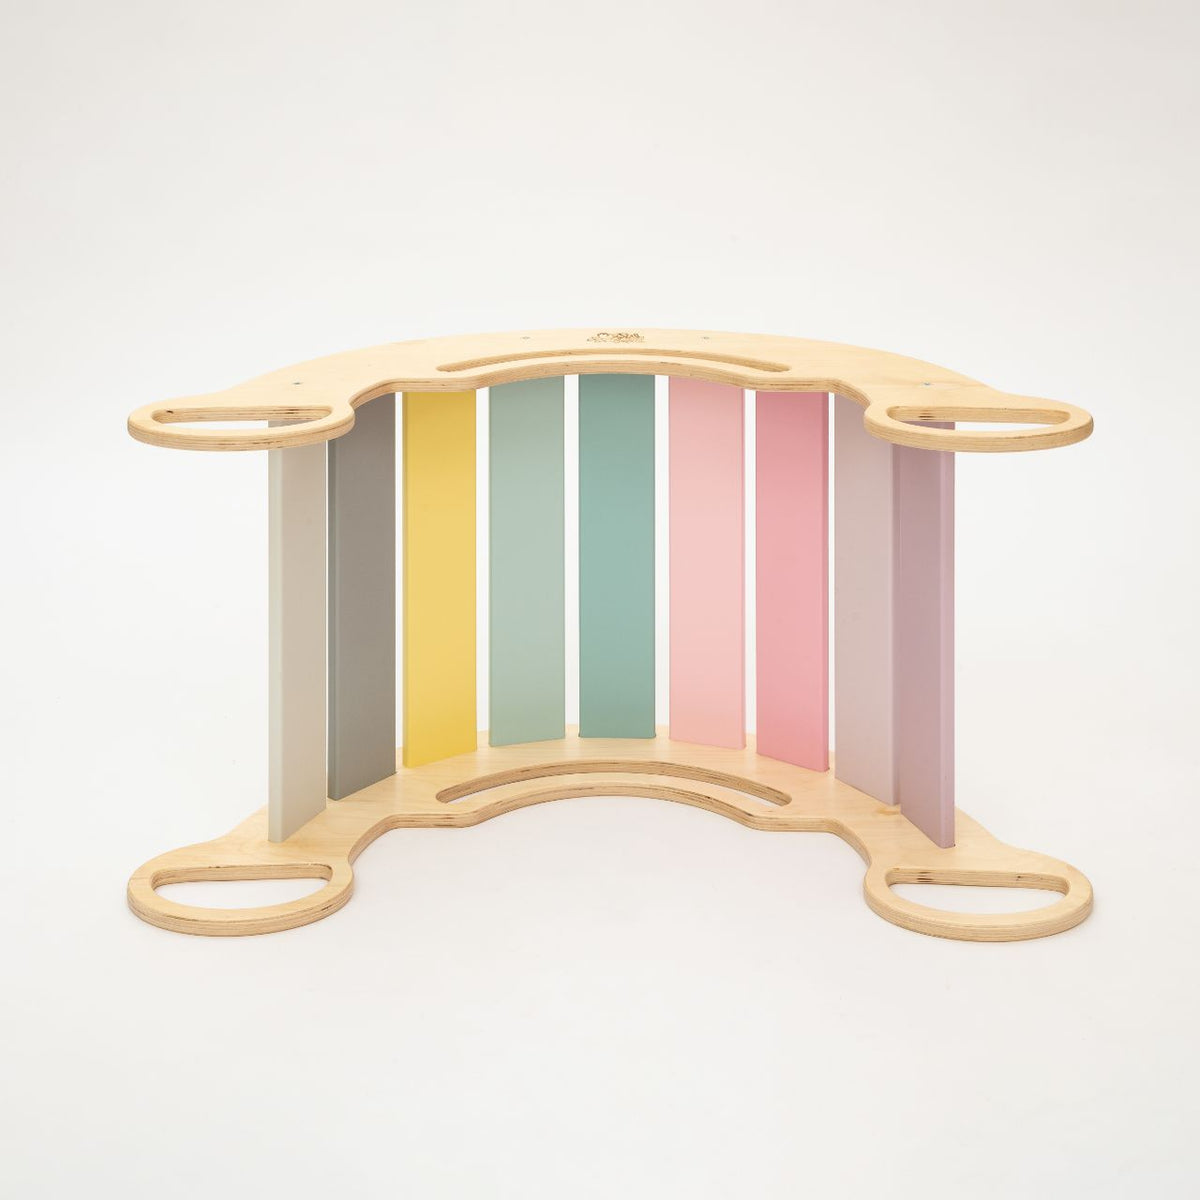 Ensemble - bascule / planche double face / chaise - couleurs pastel